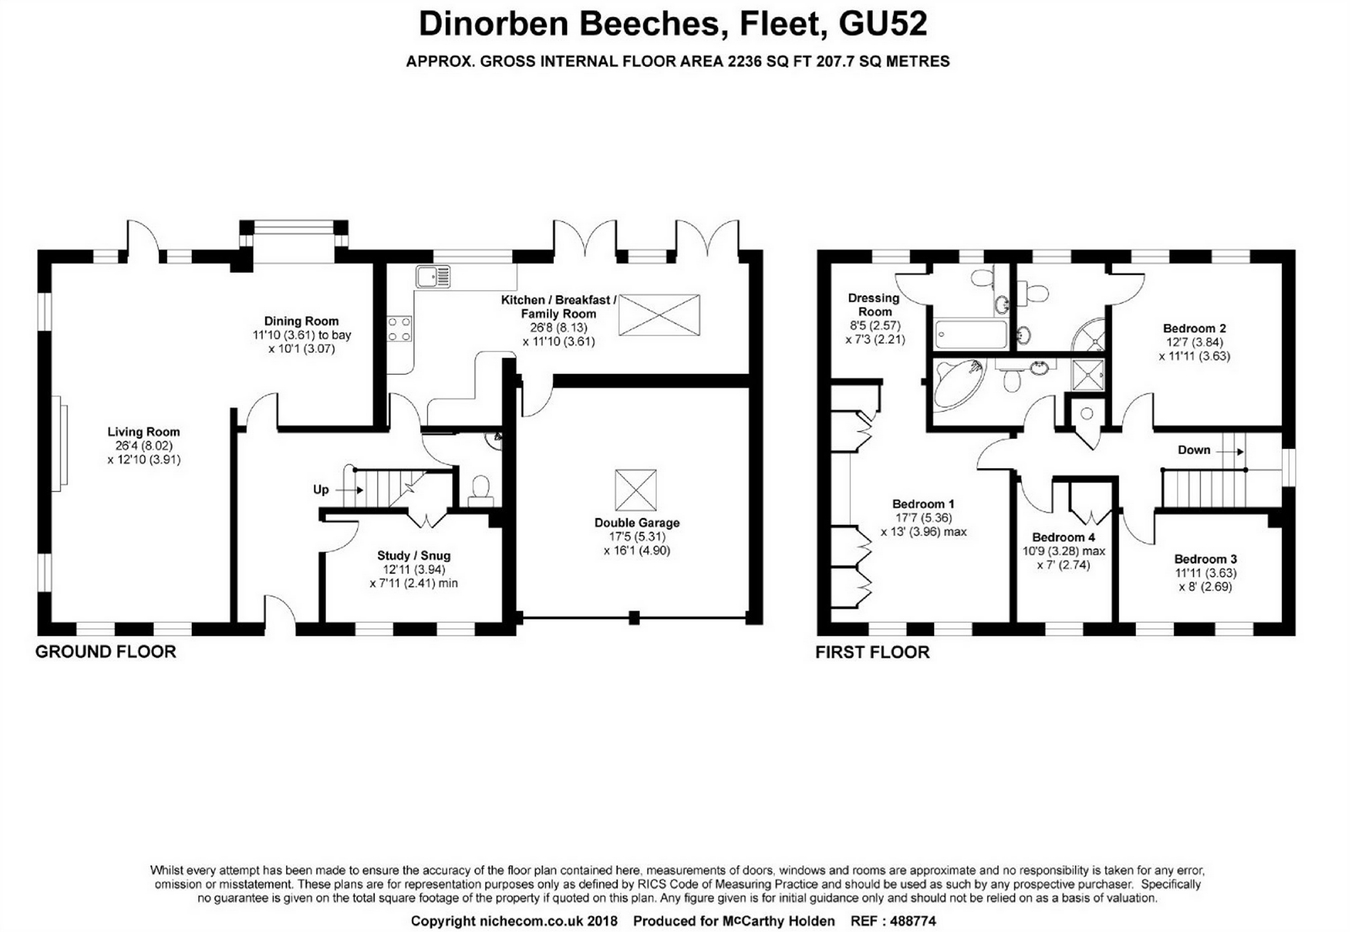 4 Bedrooms Detached house for sale in Dinorben Beeches, Fleet GU52